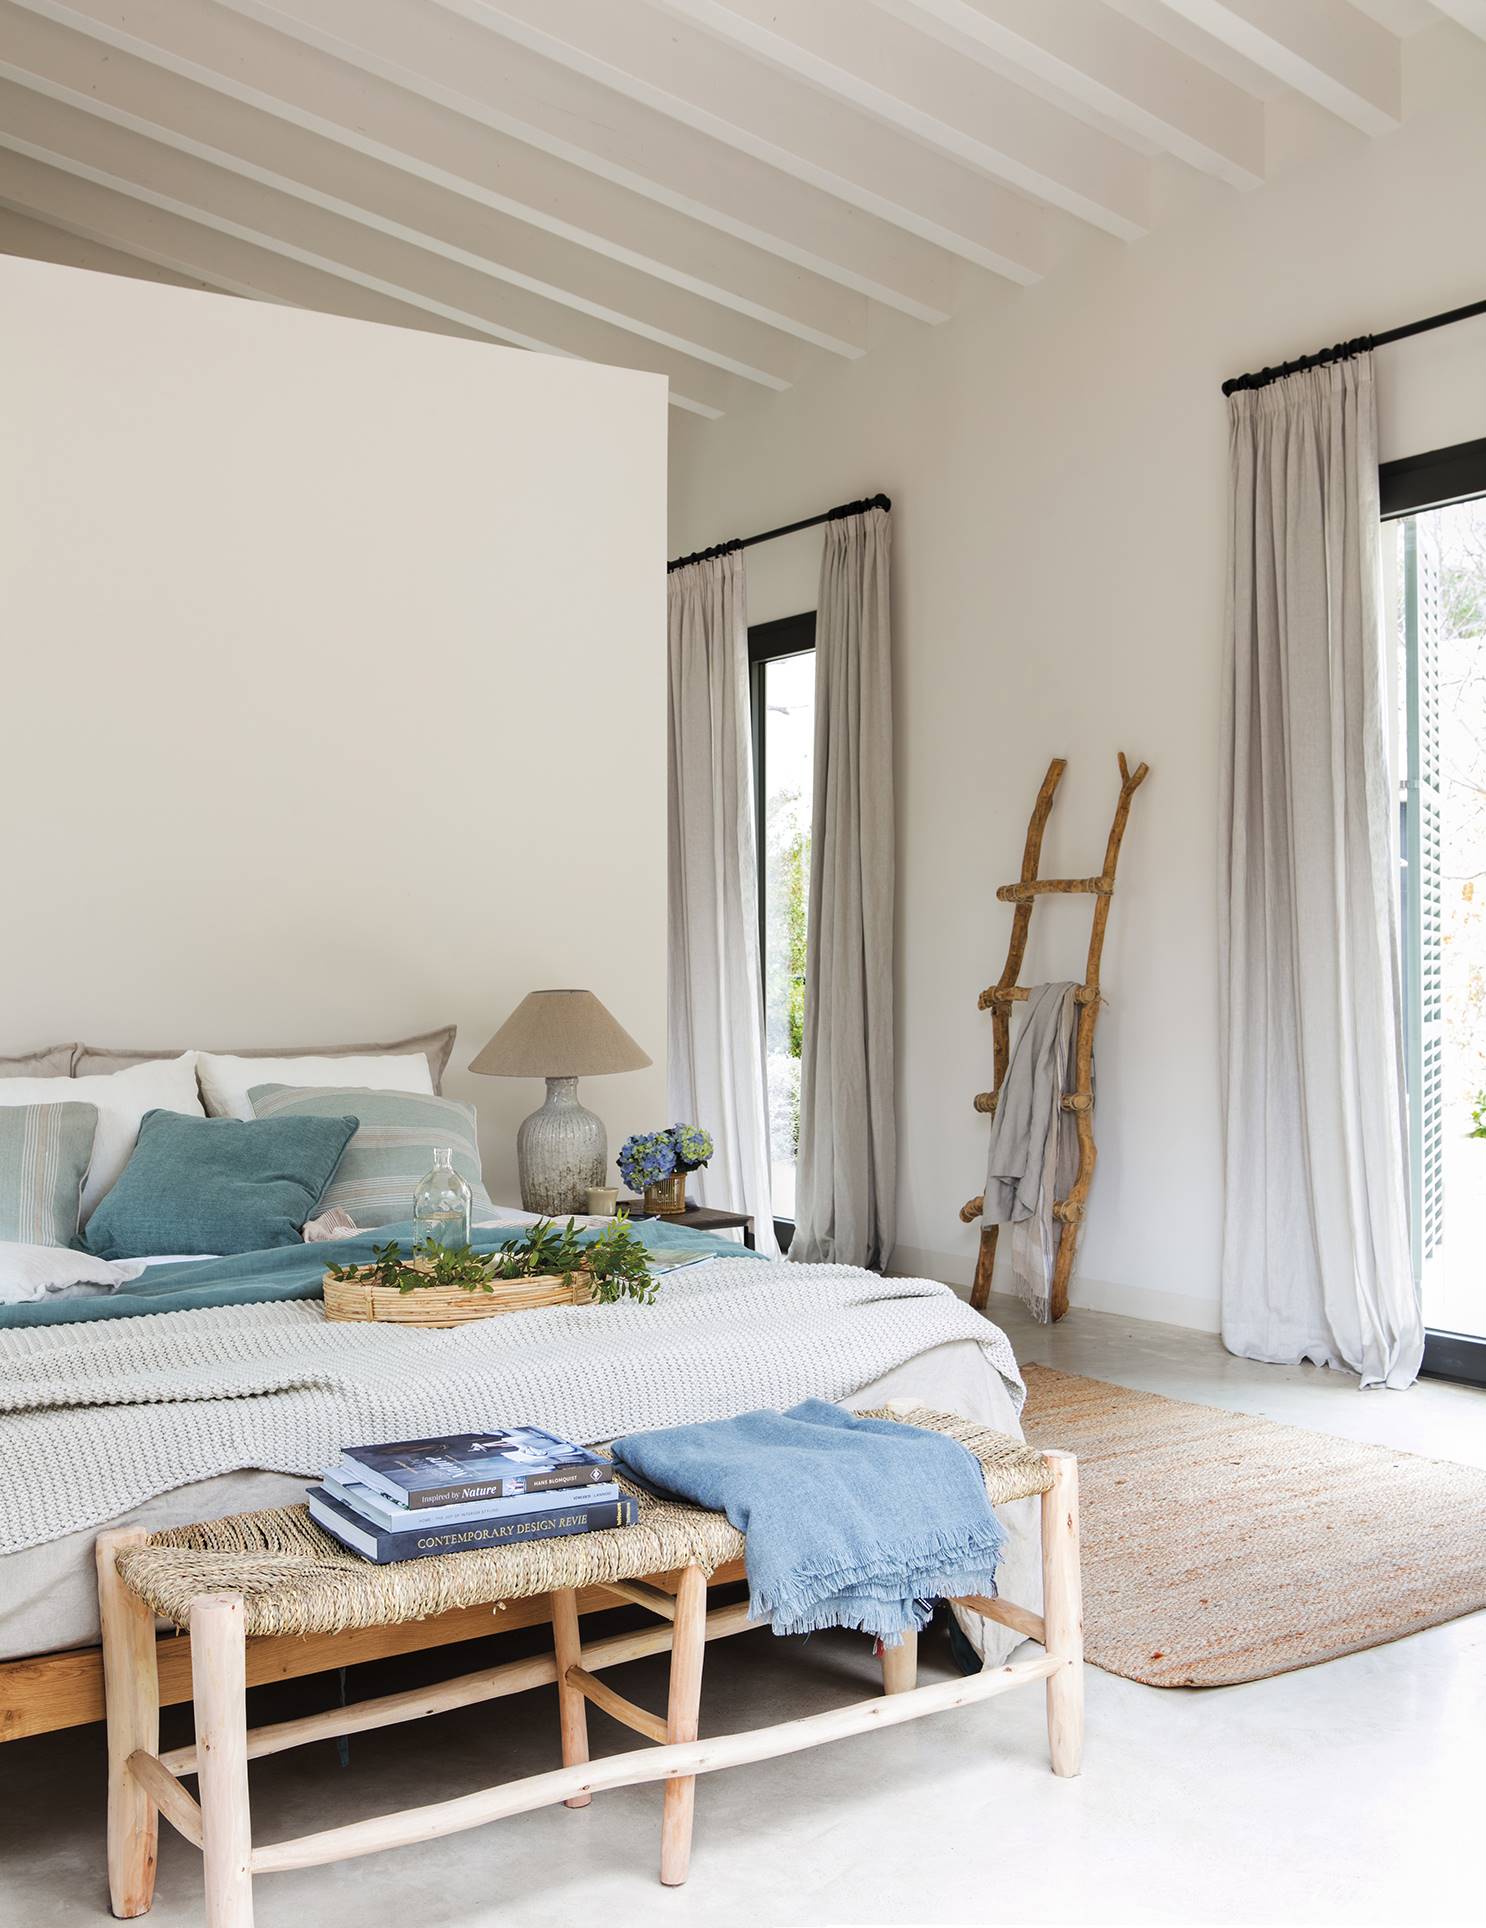 Dormitorio veraniego con textiles ligeros en la cama, banqueta al pie de la cama de fibras y escalera al fondo decorativa.